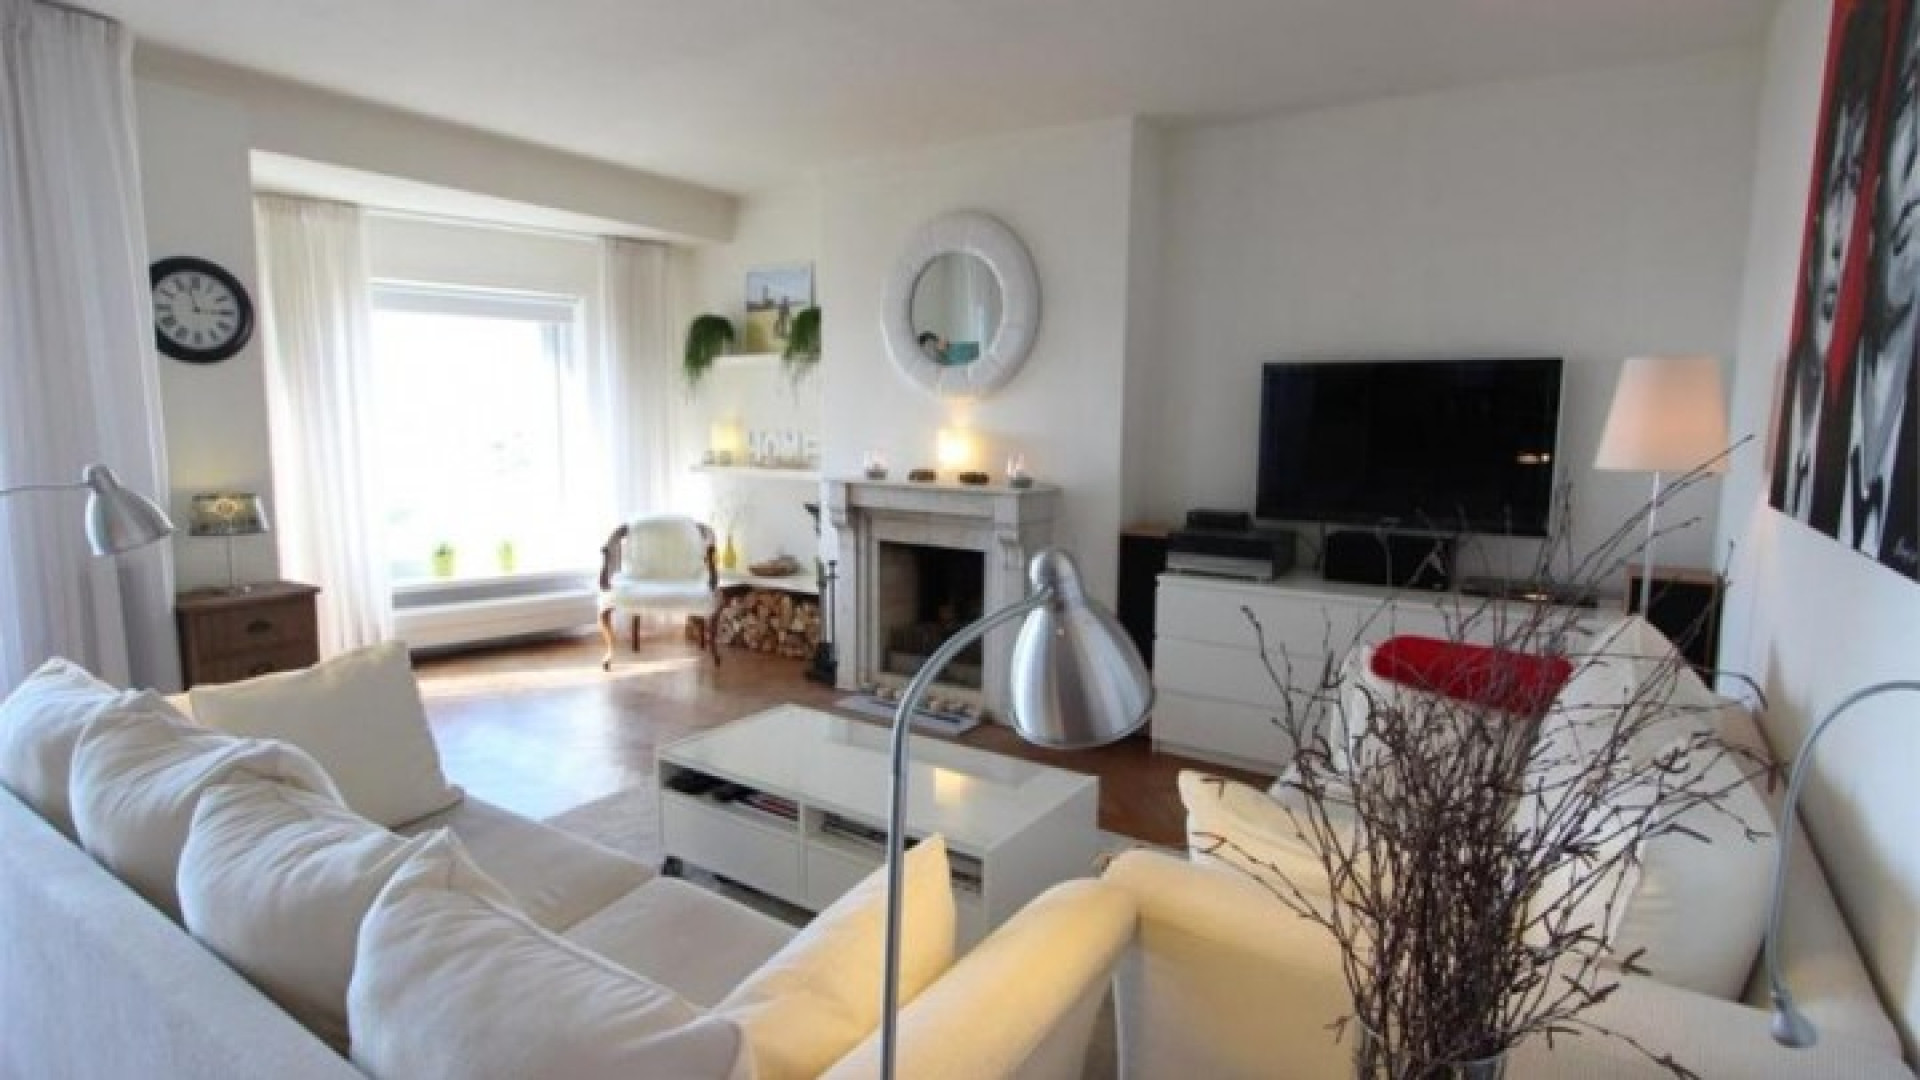 Rene van der Gijp koopt appartement aan de Scheveningse boulevard en betaalt cash. Zie beelden! 6